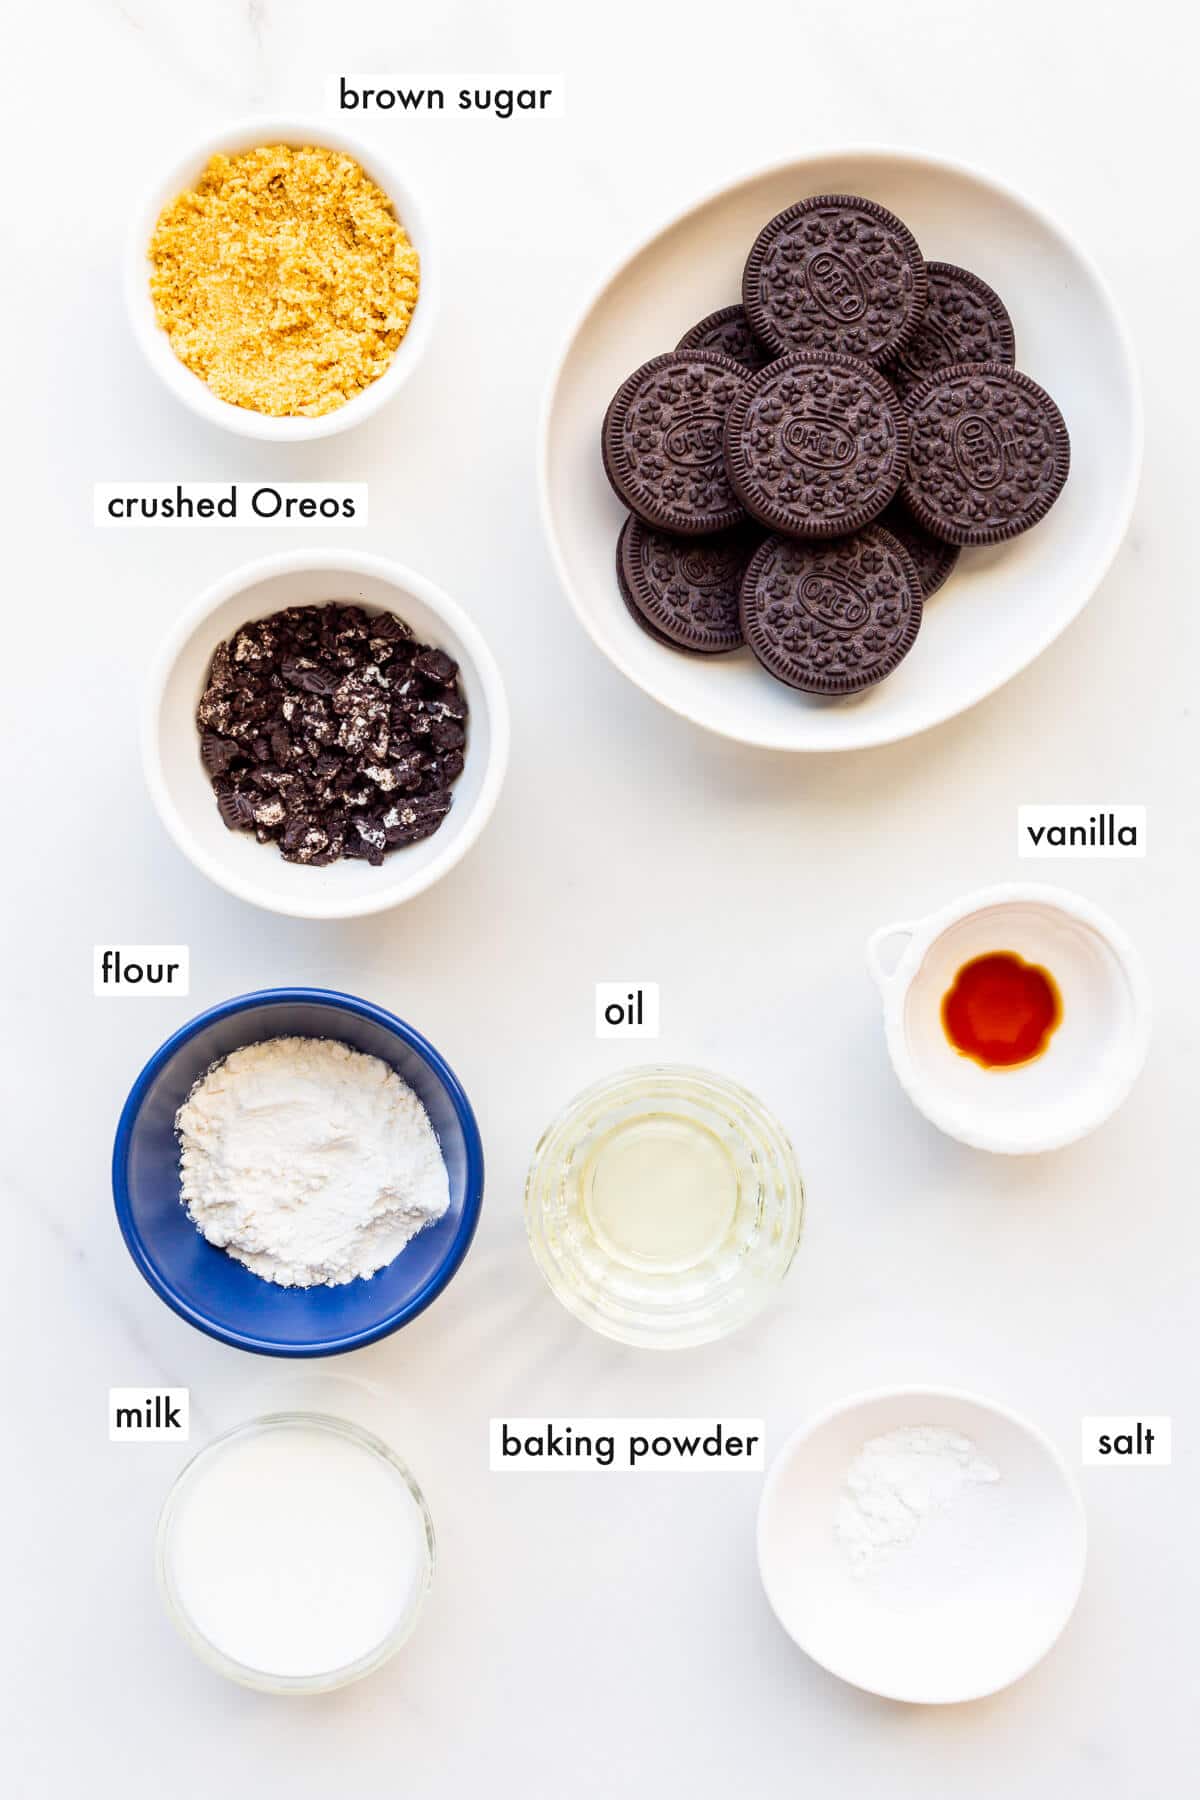 Image of ingredients to make a Oreo mug cake measured out.